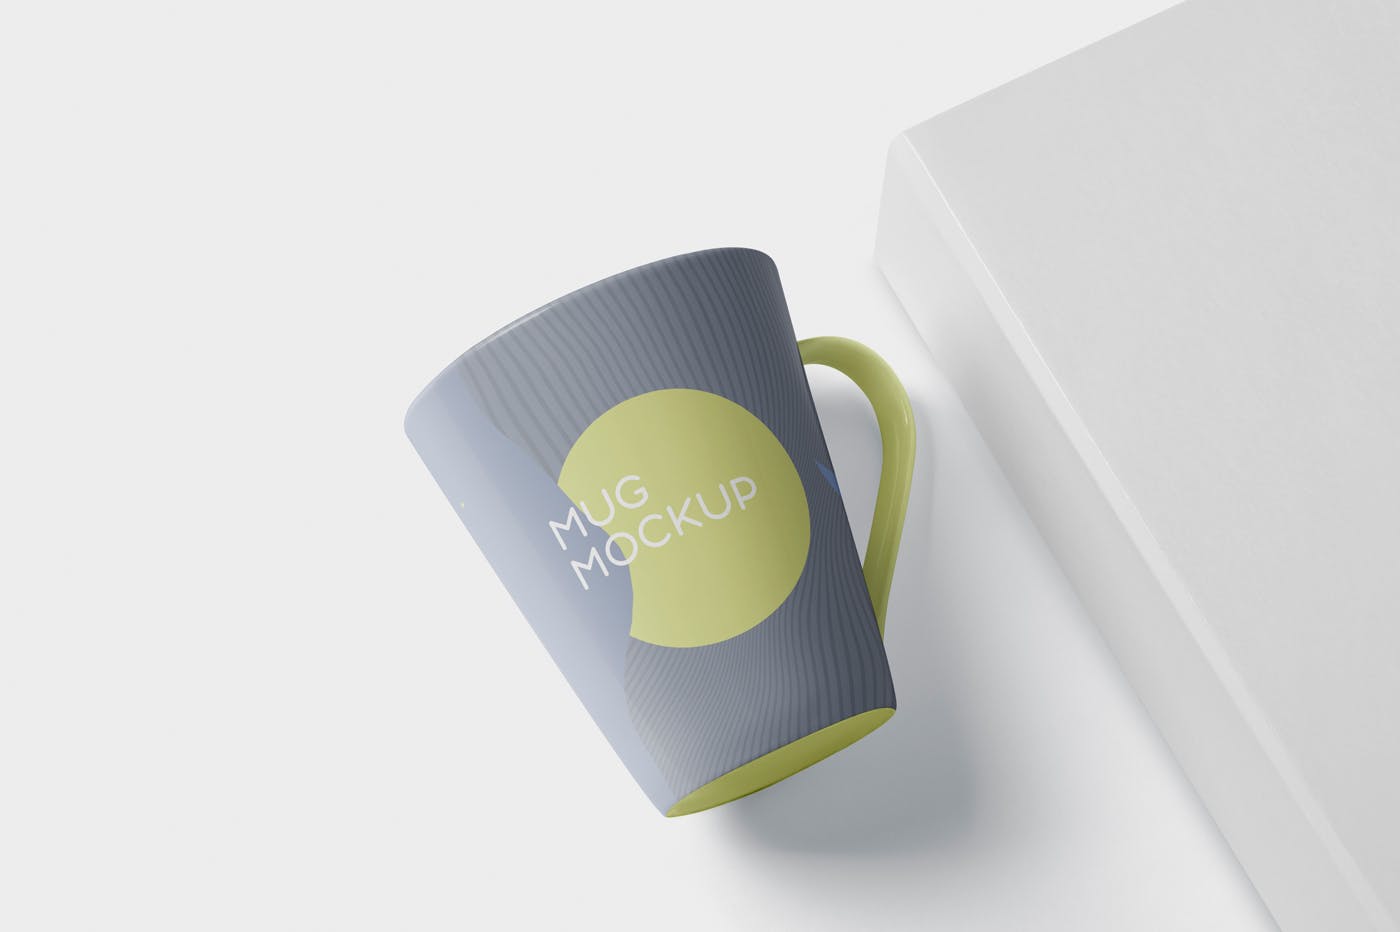 锥形马克杯图案设计素材库精选 Mug Mockup – Cone Shaped插图(4)